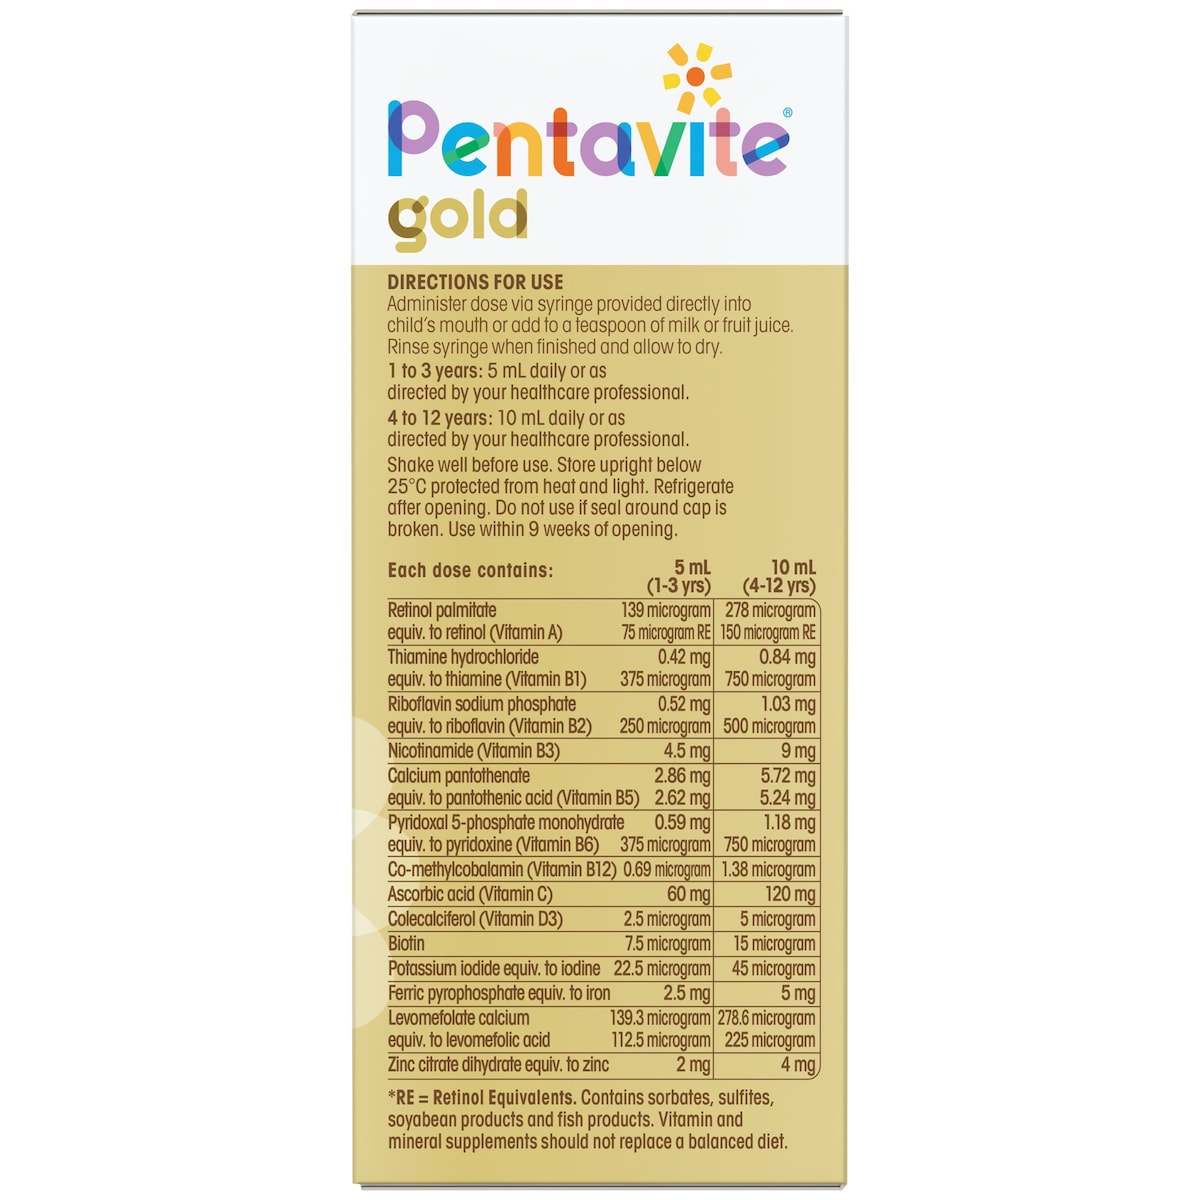 Pentavite Gold Multivitamin + Iron Liquid Kids Watermelon Flavour 200ml